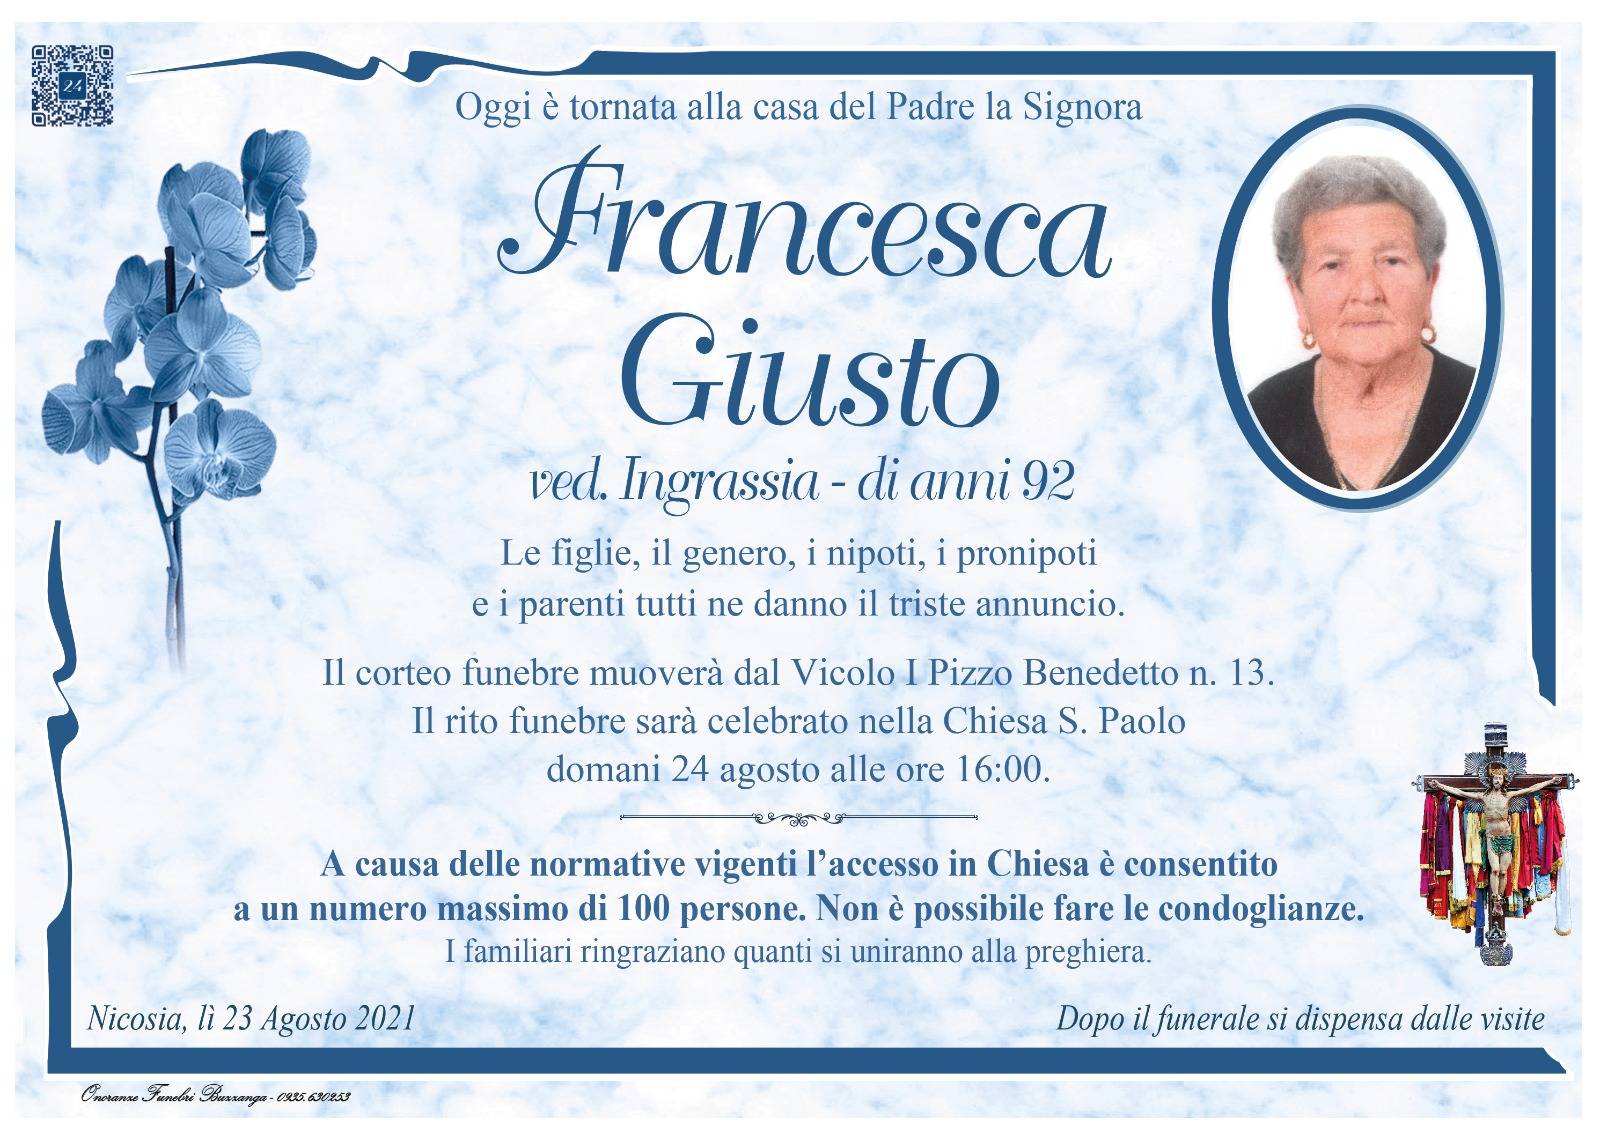 Francesca Giusto